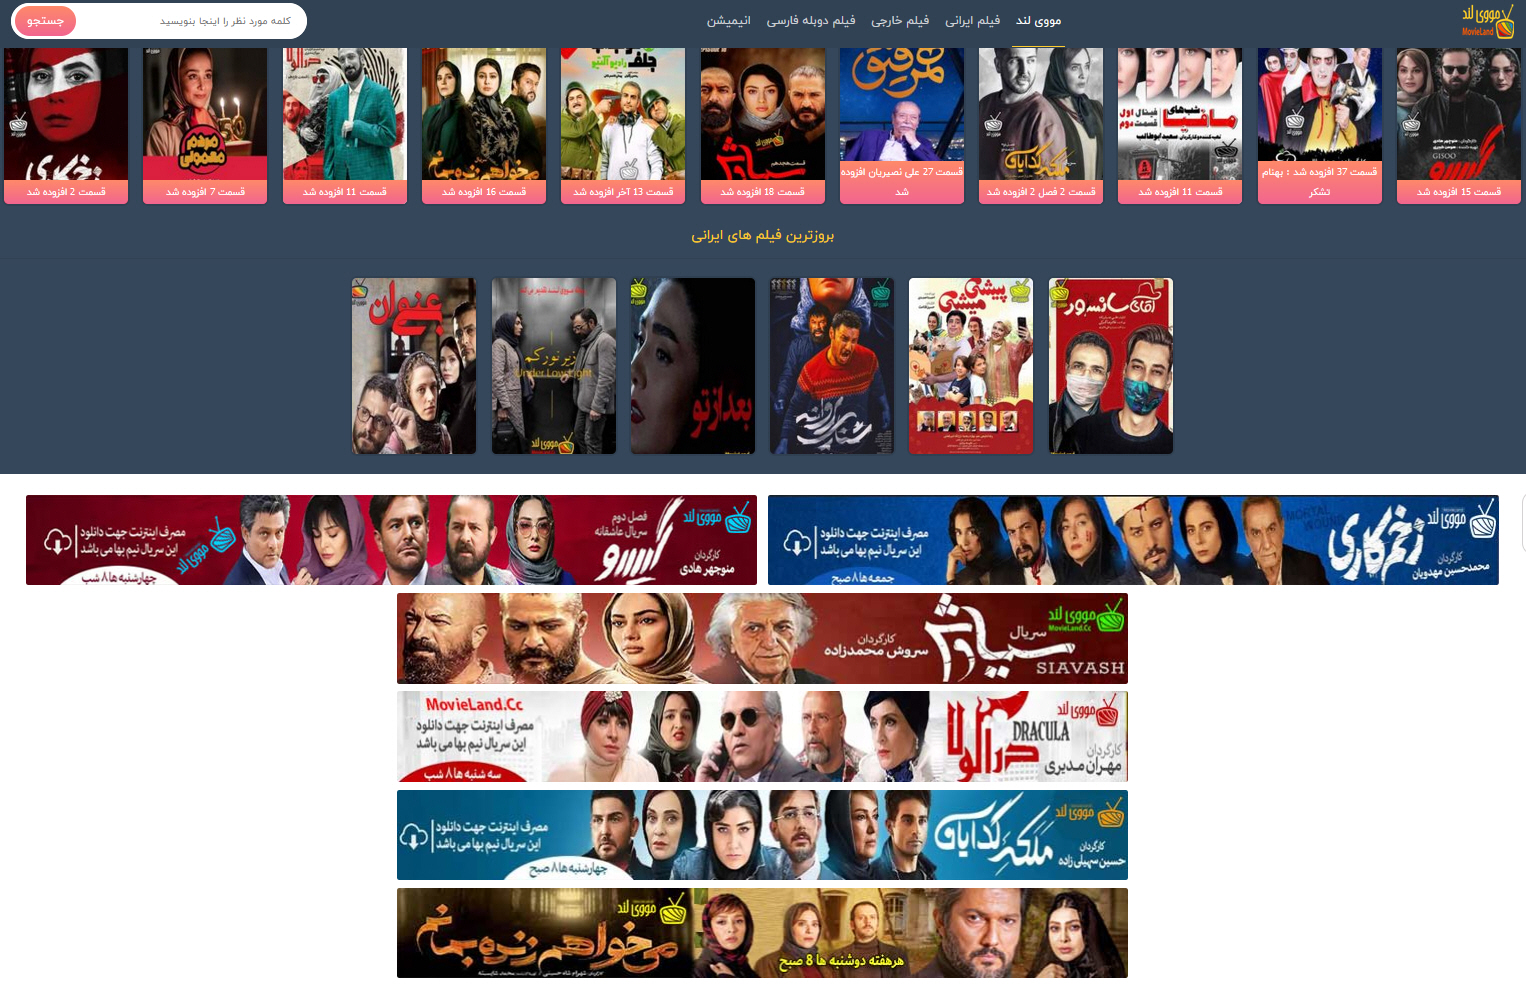 دانلود فیلم و سریال رایگان ایرانی و خارجی اما قانونی در سایت مووی لند